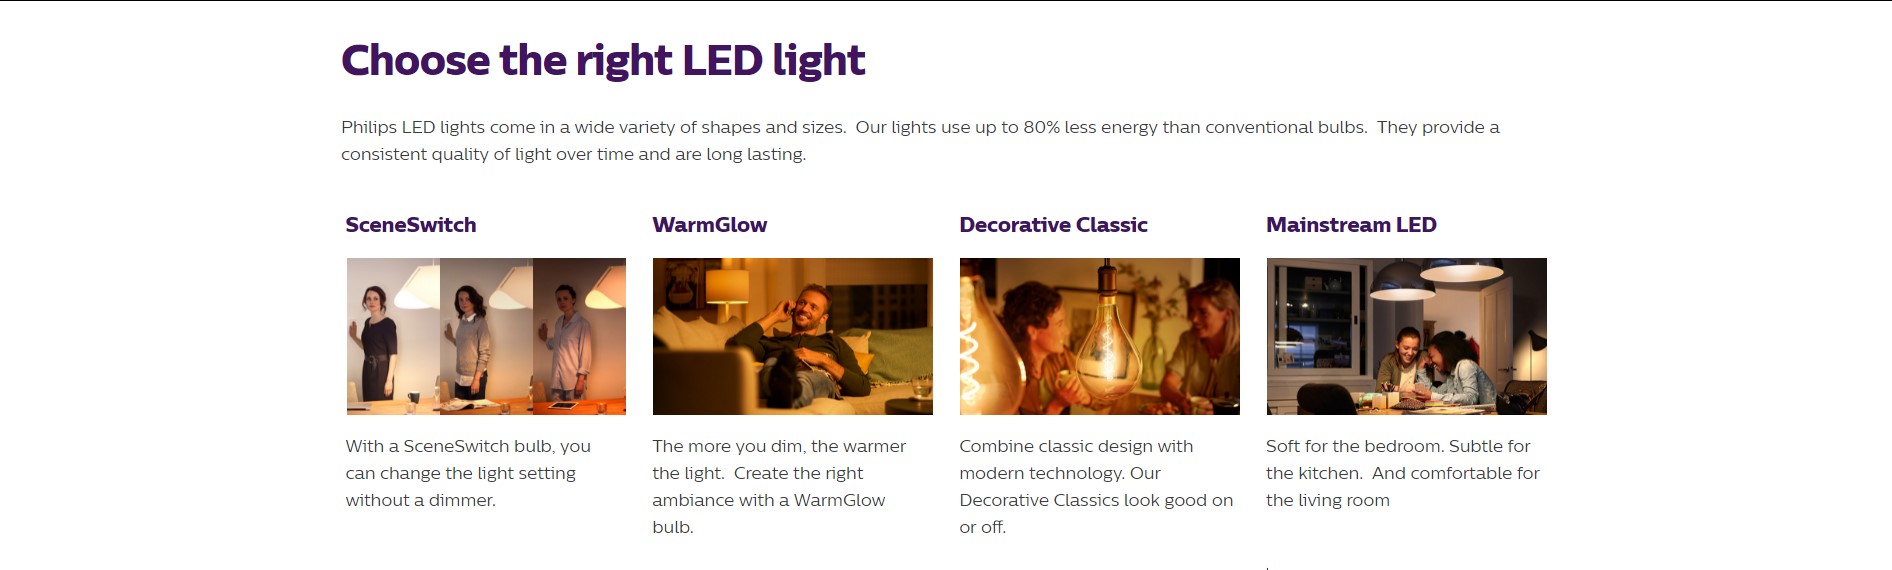 Philips LED Benefits